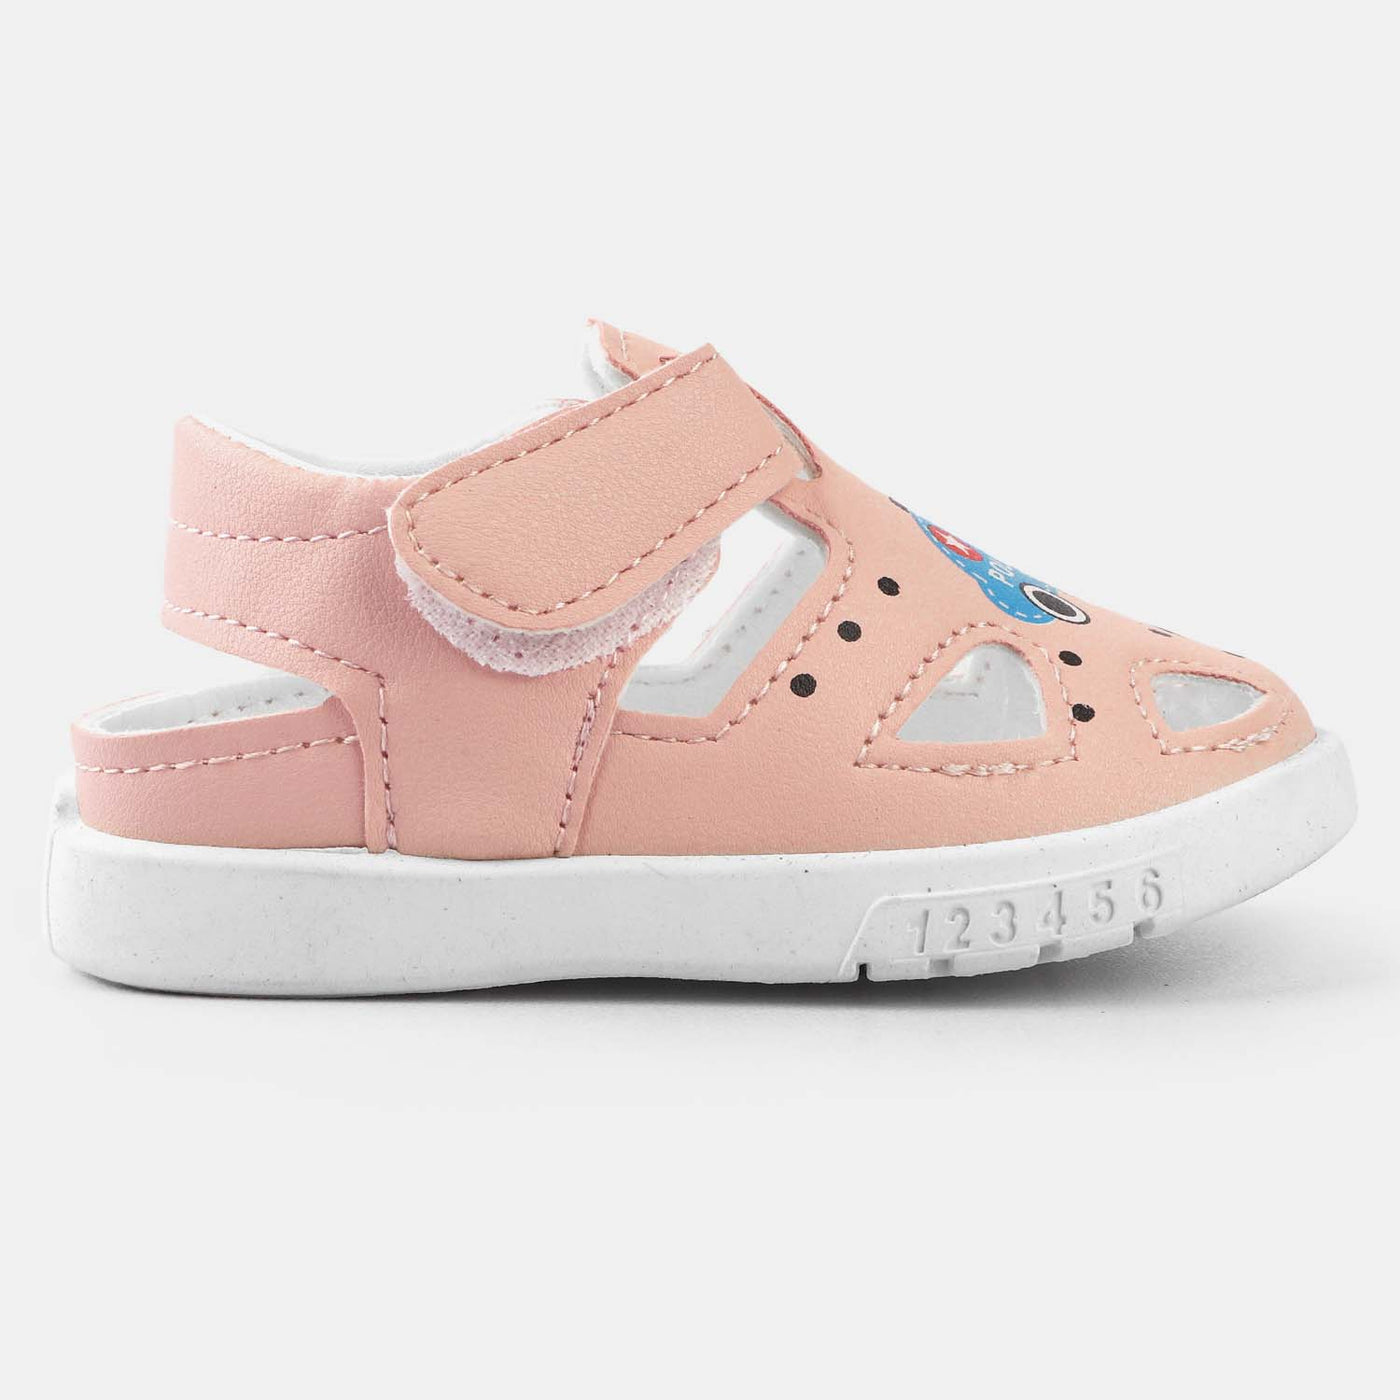 Infant Girls Sandal A-3-Pink